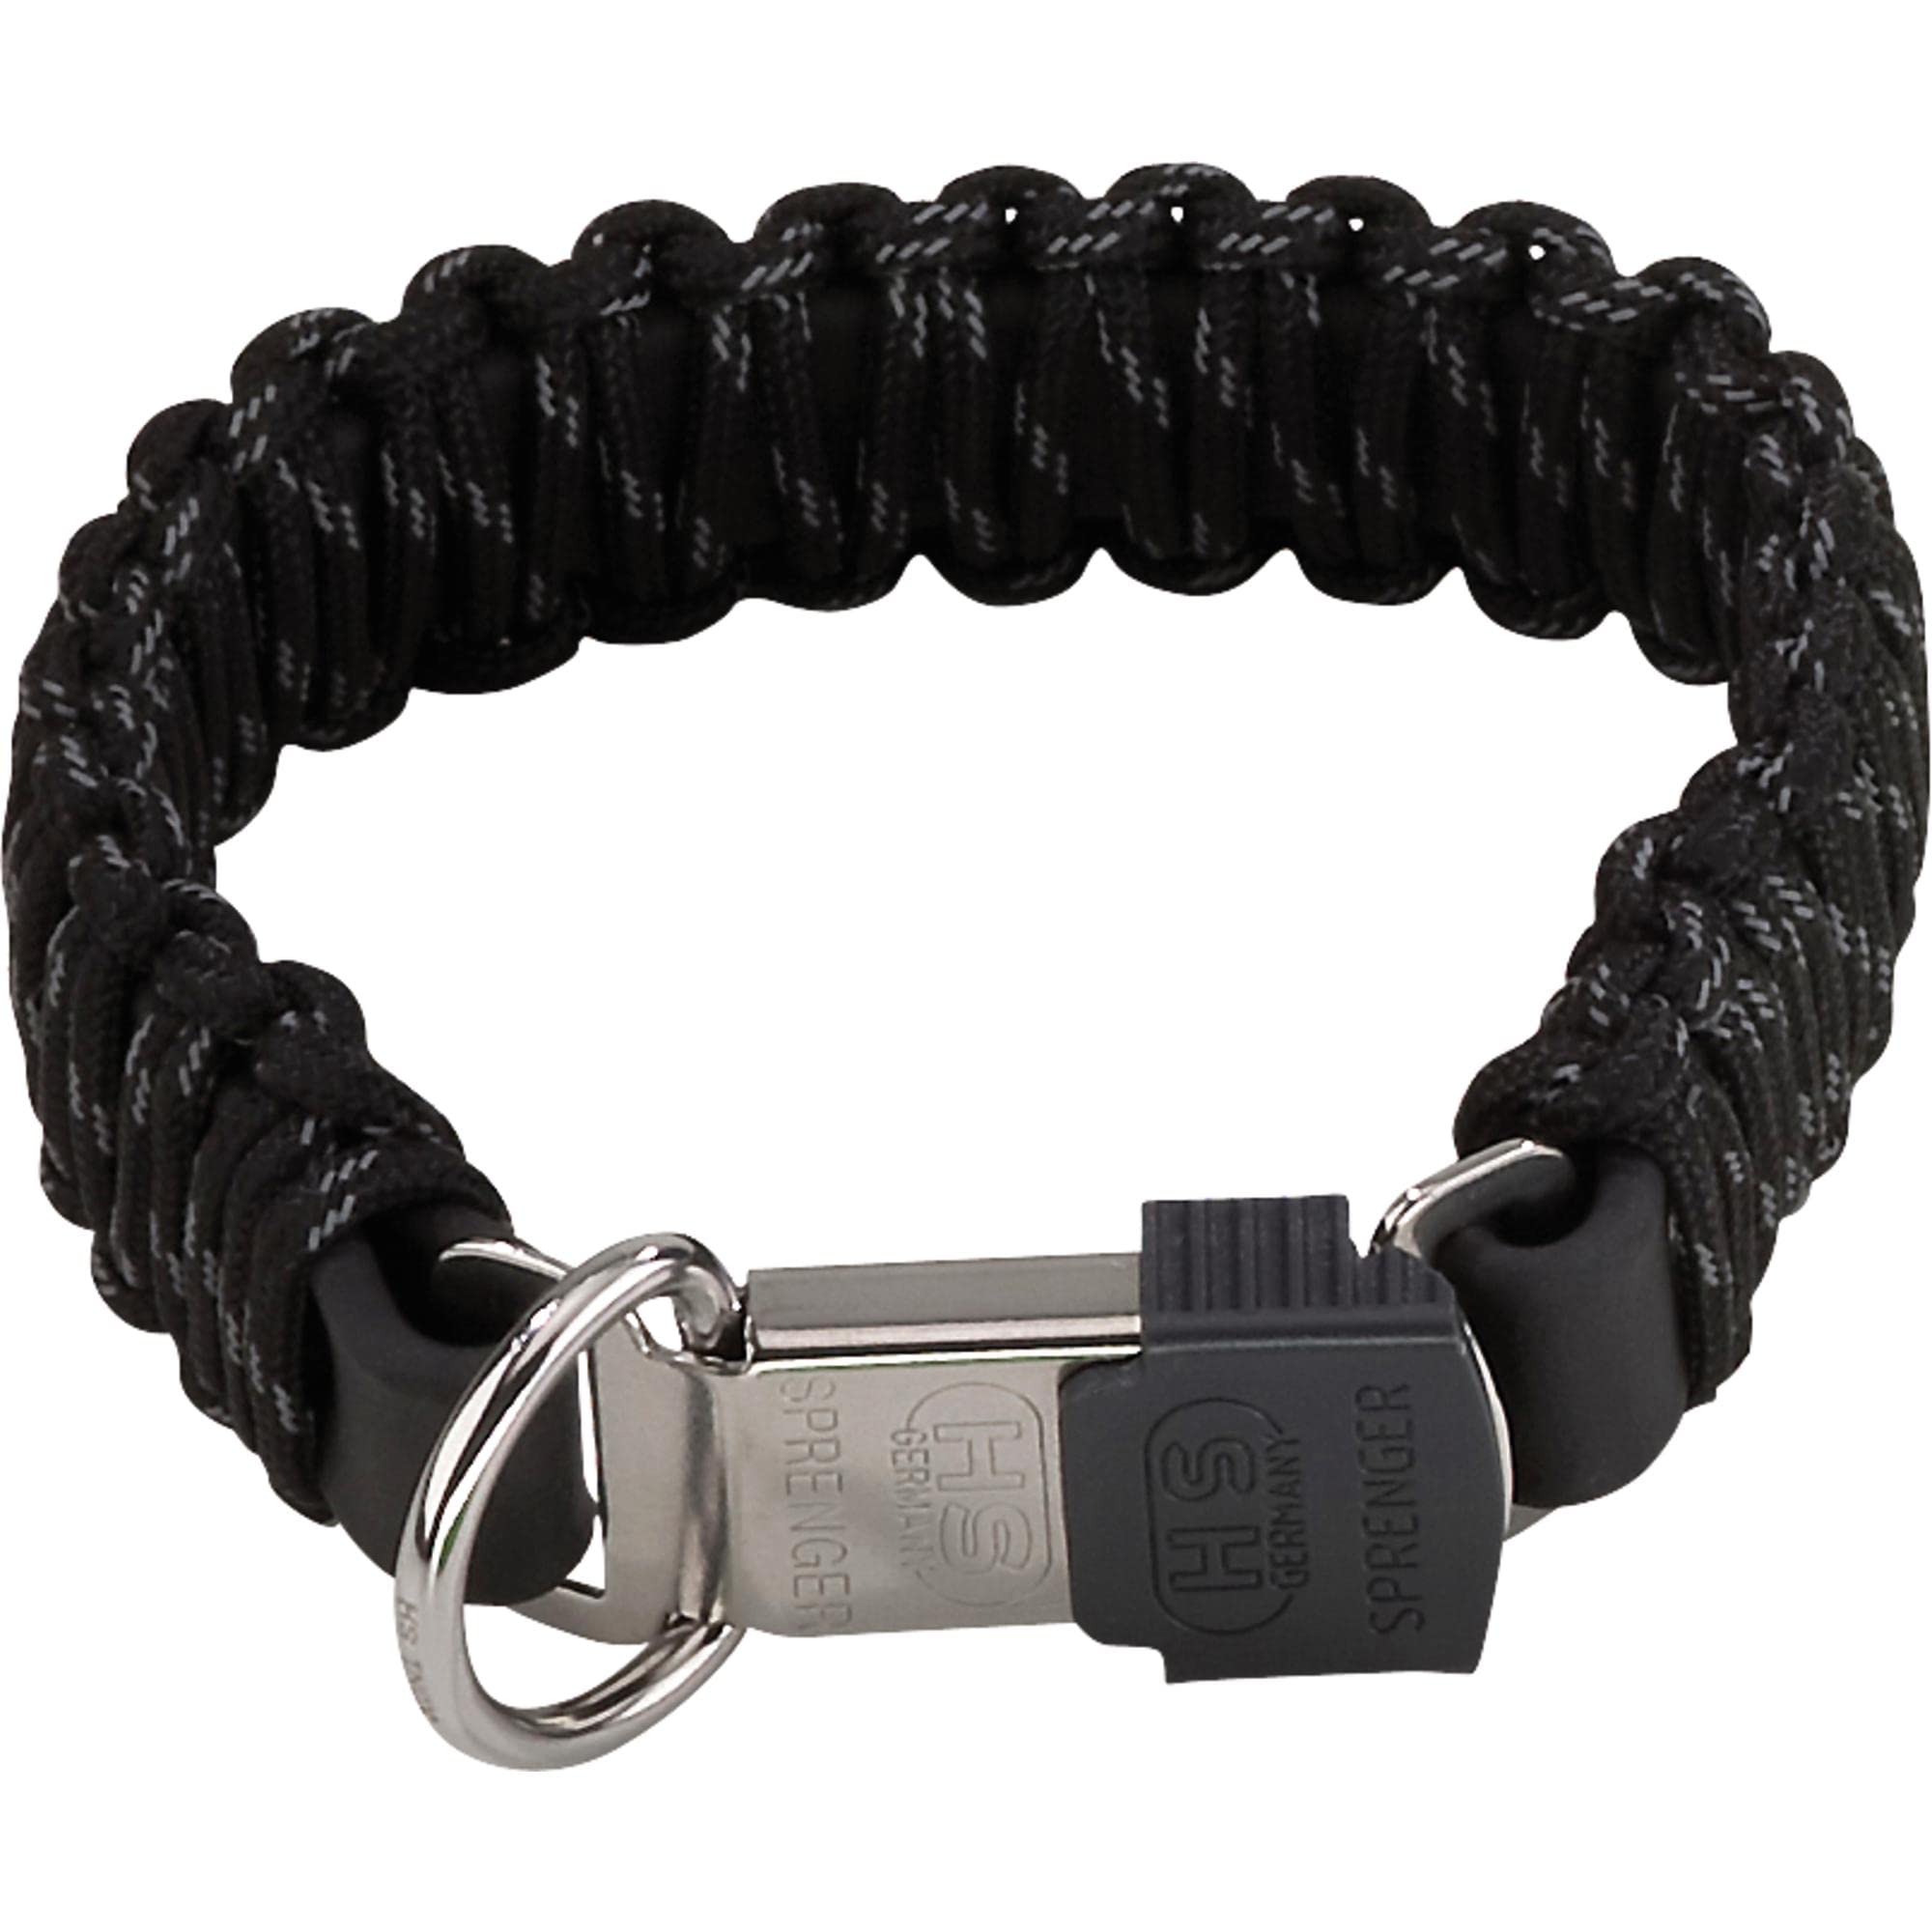 Sprenger Hundehalsband aus stabilem Paracord Nylon mit Edelstahl Clic Lock Verschluss I Wasserabweisende Halskette, reflektierend, langlebig 55 cm, schwarz